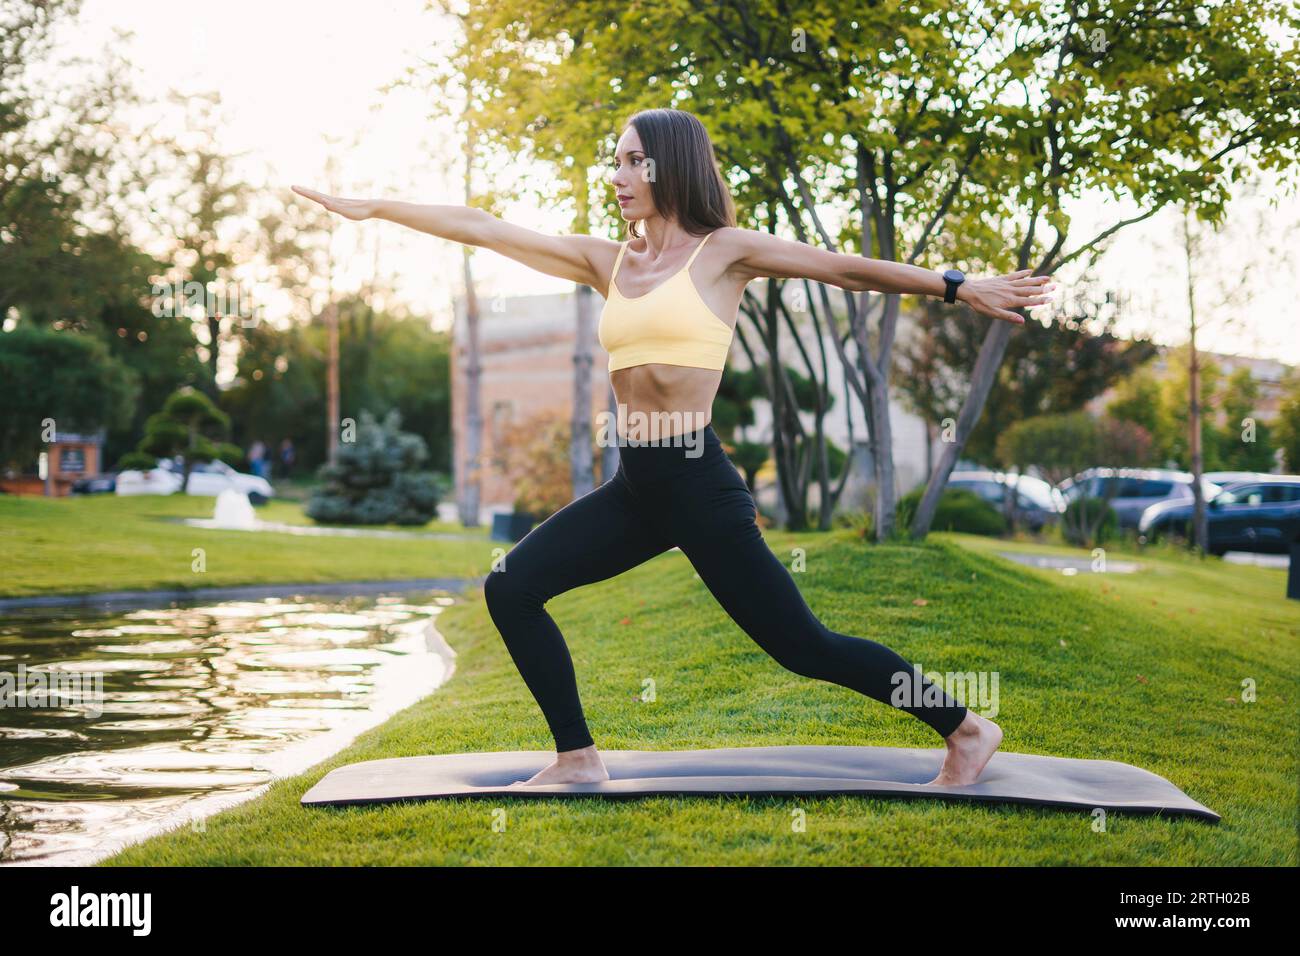 Vue latérale d'une jeune femme en forme s'exerçant sur un tapis dans le parc. Femme de fitness. Étirement sur tapis de fitness, concept de bien-être. Banque D'Images